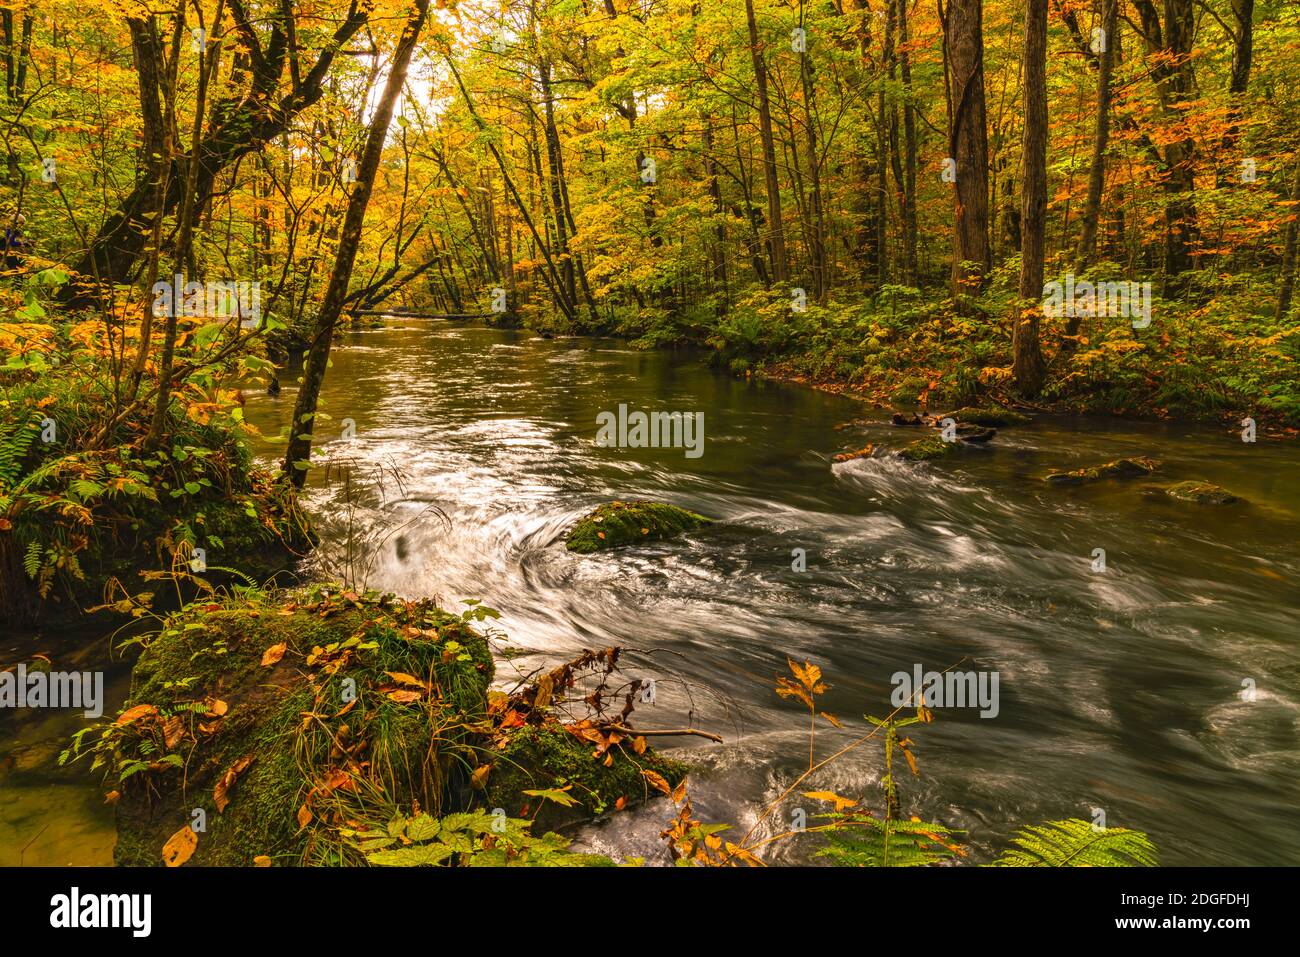 Landschaftlich schöner Blick auf den schönen Fluss Oirase im Wald Von buntem Laub in der Herbstsaison Stockfoto